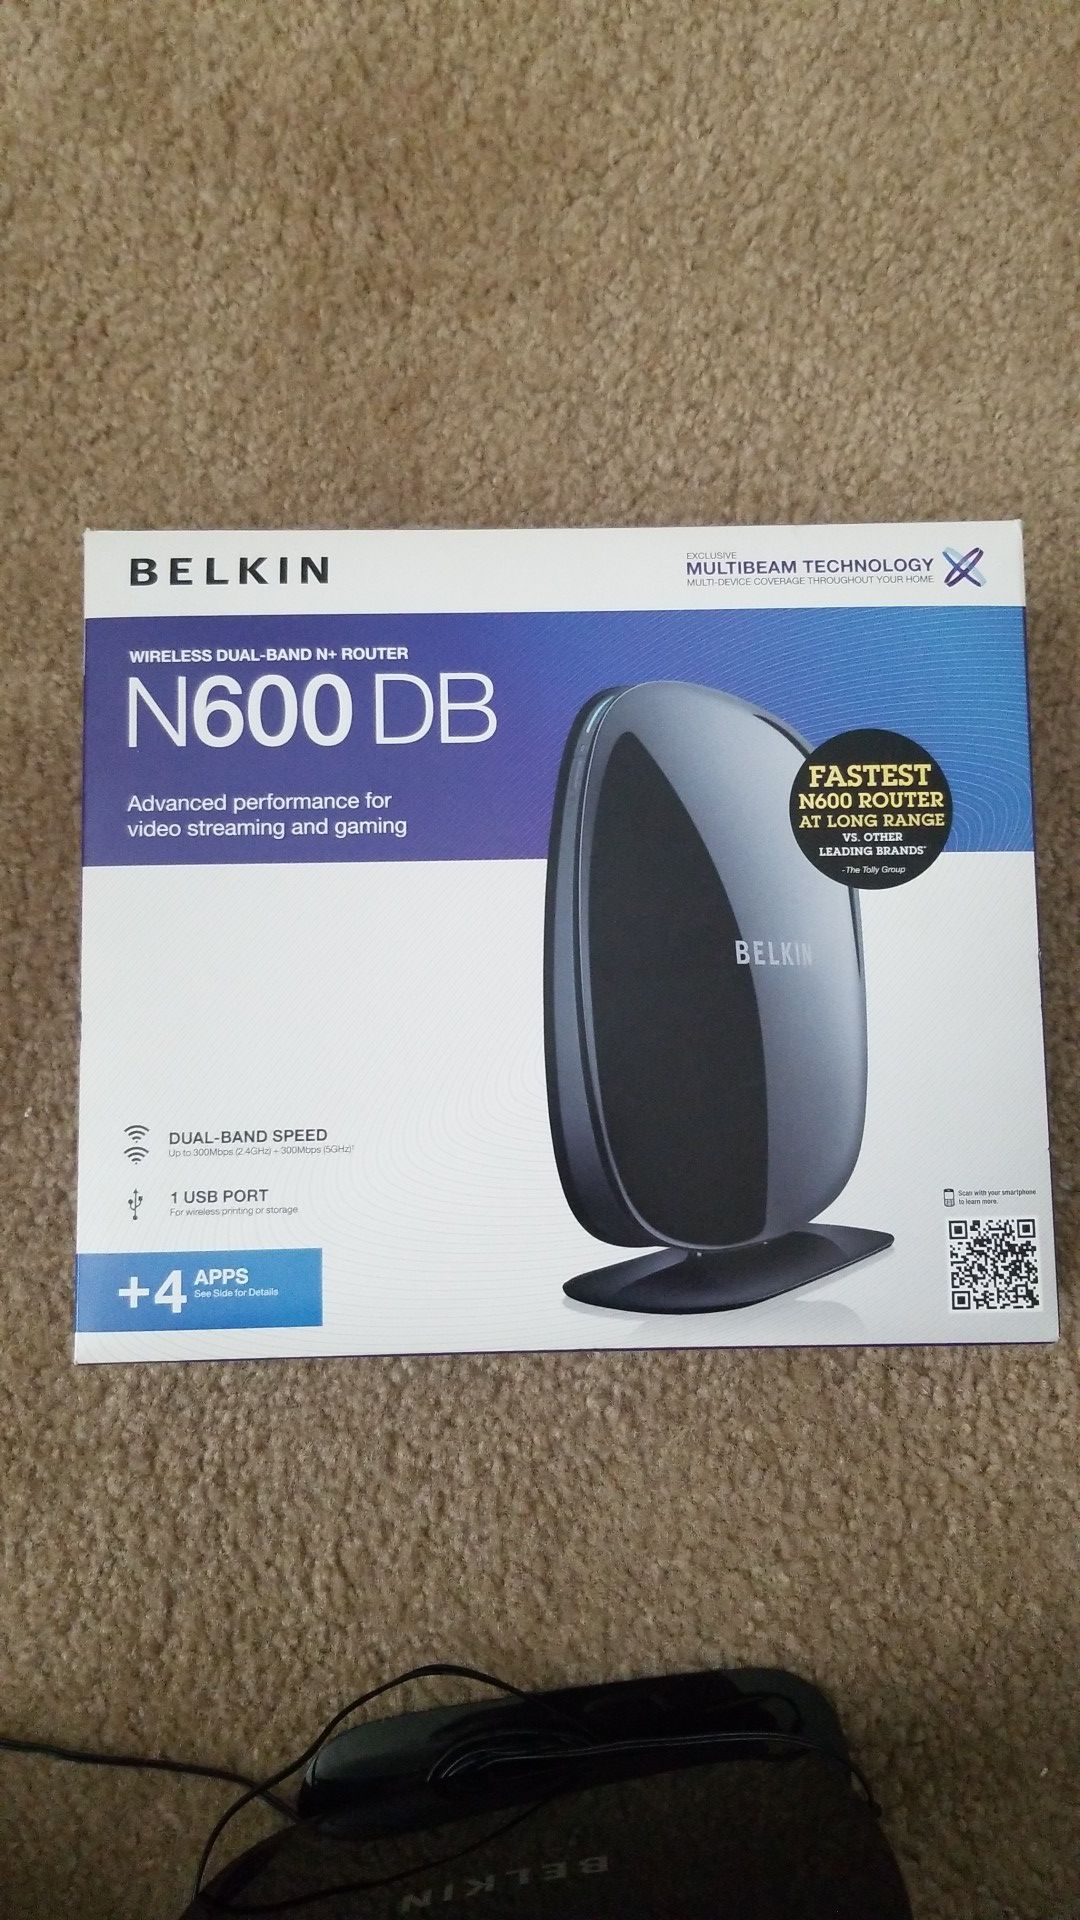 Belkin N600 DB router